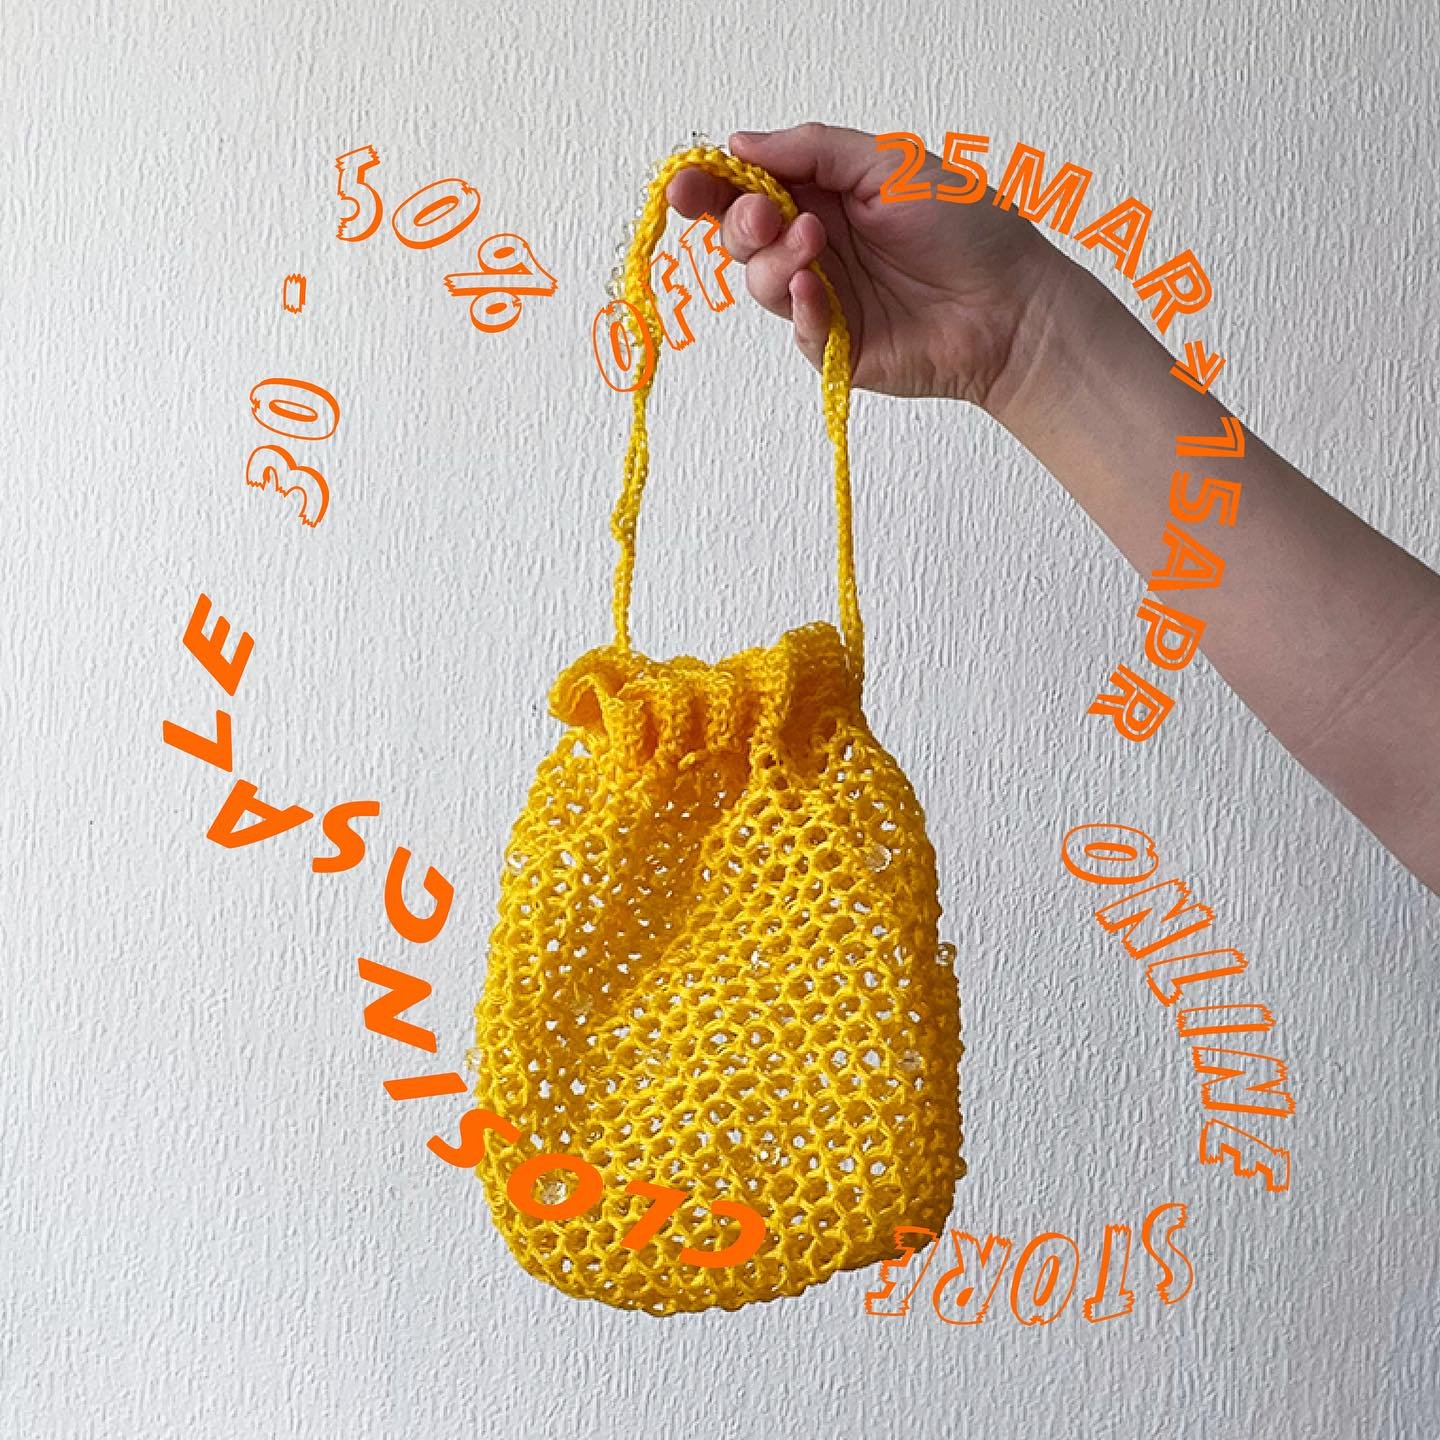 🍣 CLOSING SALE 🍣

🥟 UNTIL TOMORROW 🥟

🍕23:59 (CEST) 🍕

クロージングセールは明日の23:59(デンマーク時間)まで！

#crochet #wallsculpture #walldecor #interiorart #crochetbag #handcrafted #かぎ針編み #ウォールデコ #インテリア雑貨 #オブジェ #かぎ針編みバッグ #벽인테리어 #홈데코